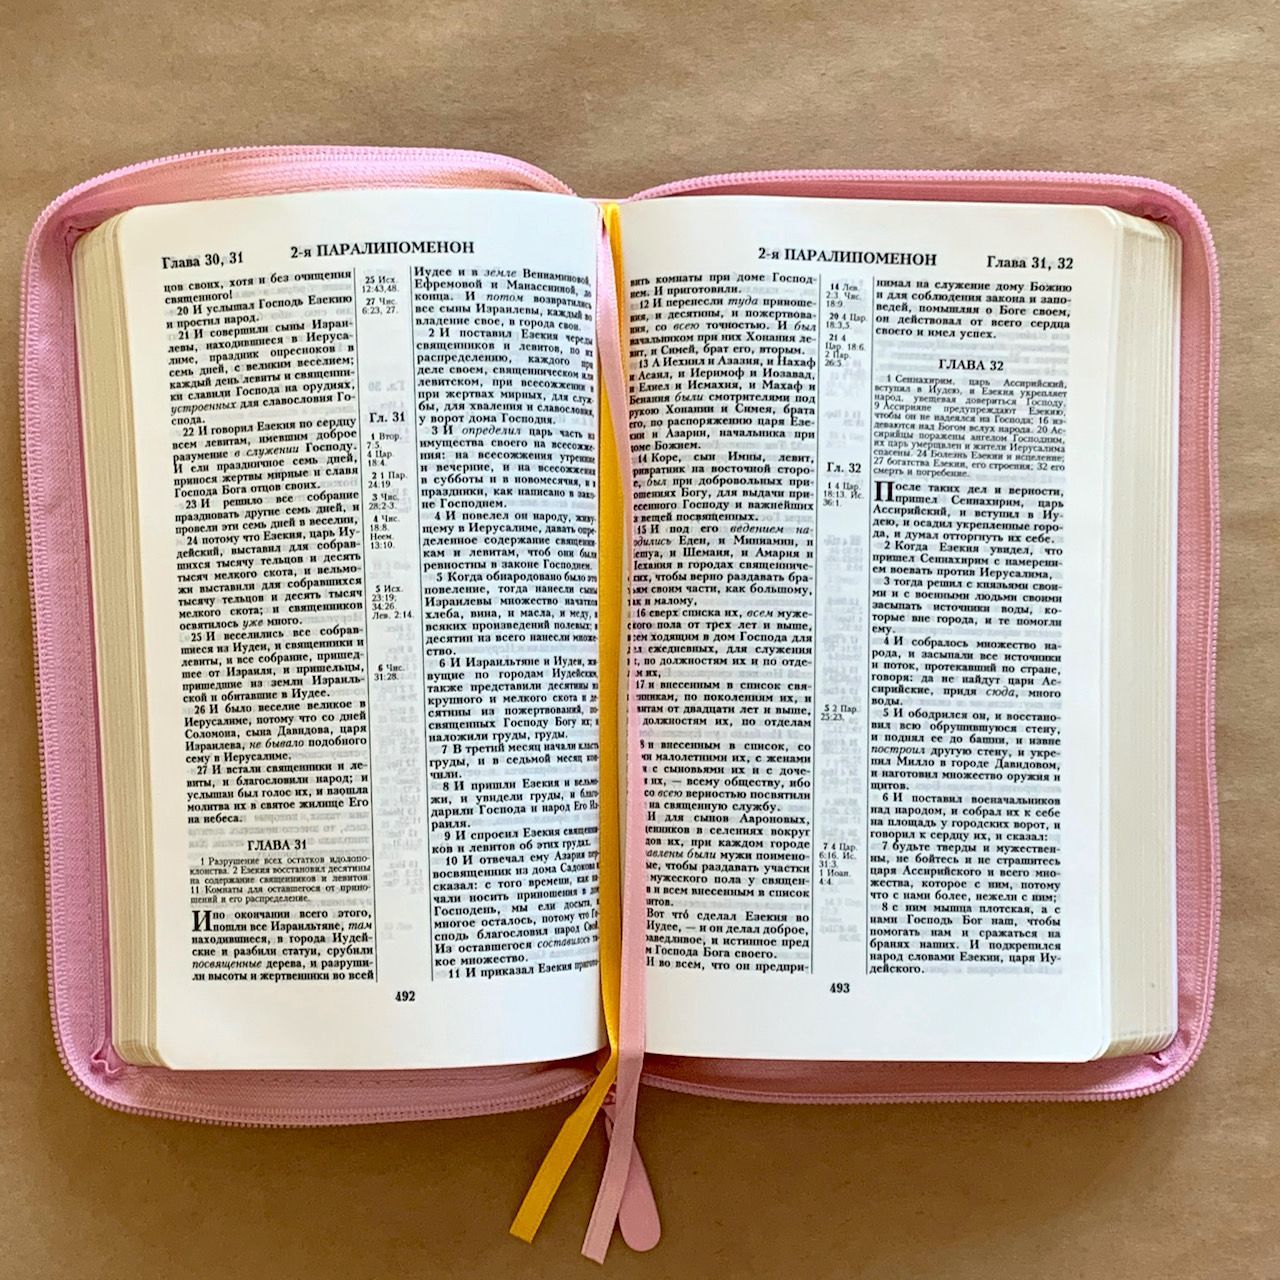 Библия 055z код D4 7074 переплет из искусственной кожи на молнии, цвет розовый с цветной печатью под ткань, дизайн "сердце", средний формат, 143*220 мм, параллельные места по центру страницы, золотой обрез, крупный шрифт